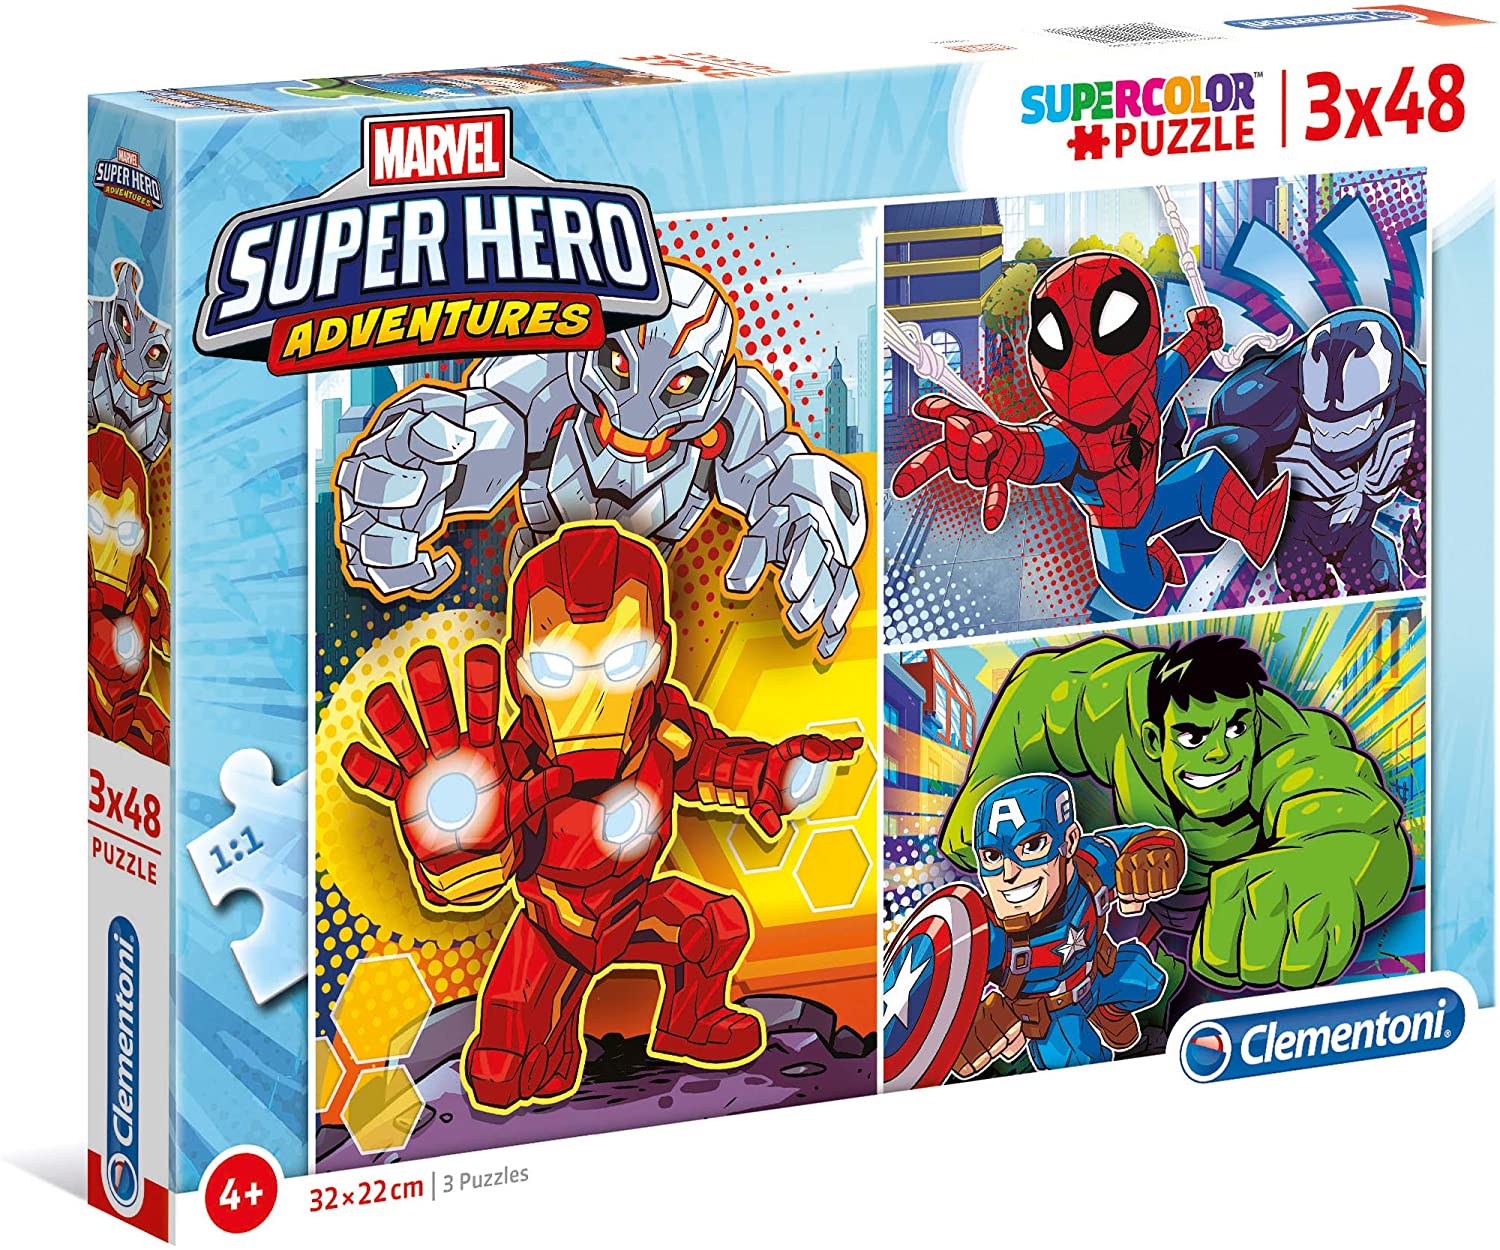 Puzzle Maxi Superhero Marvel 3x48pzs